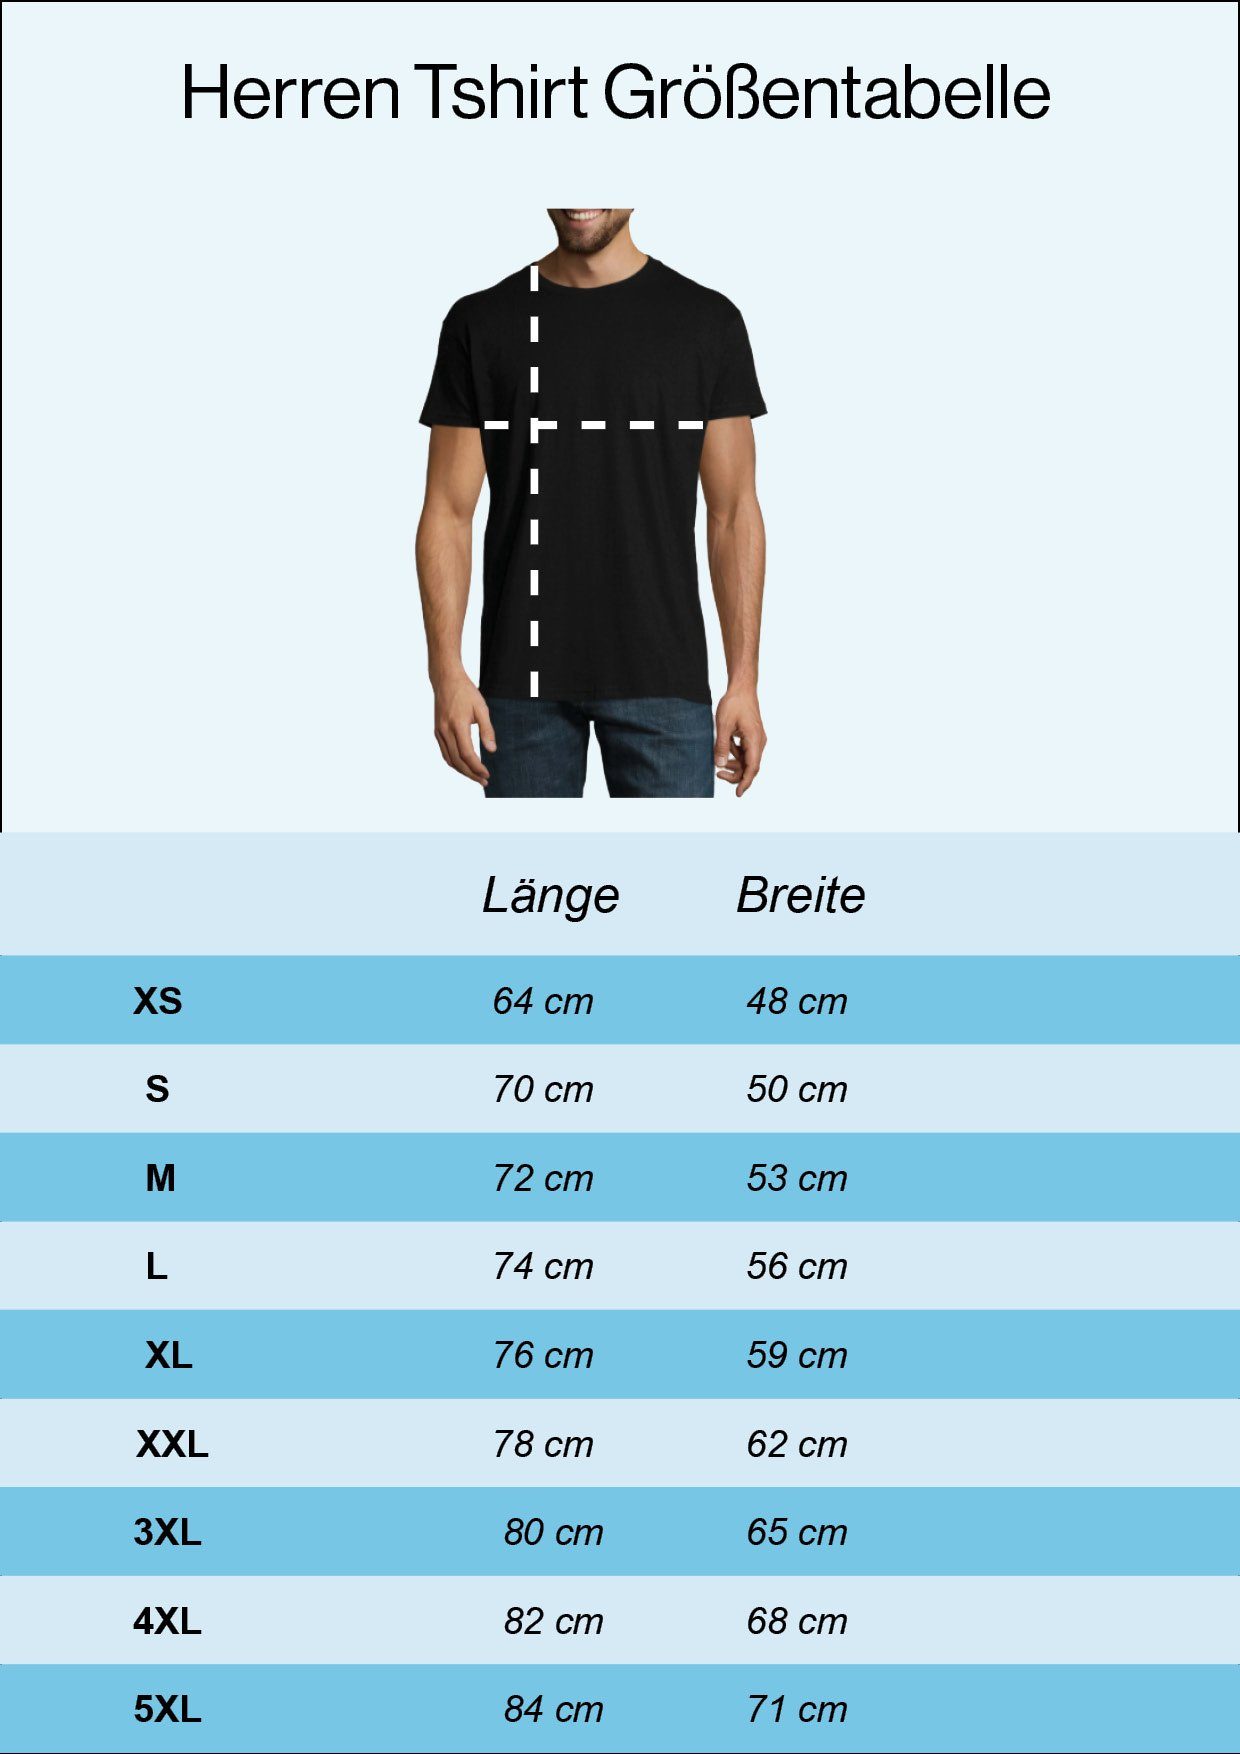 Rock'n'Roll Weiss Skelett Youth Frontdruck Horror Designz Hand T-Shirt Fun-Look Trendigem Herren im mit T-Shirt